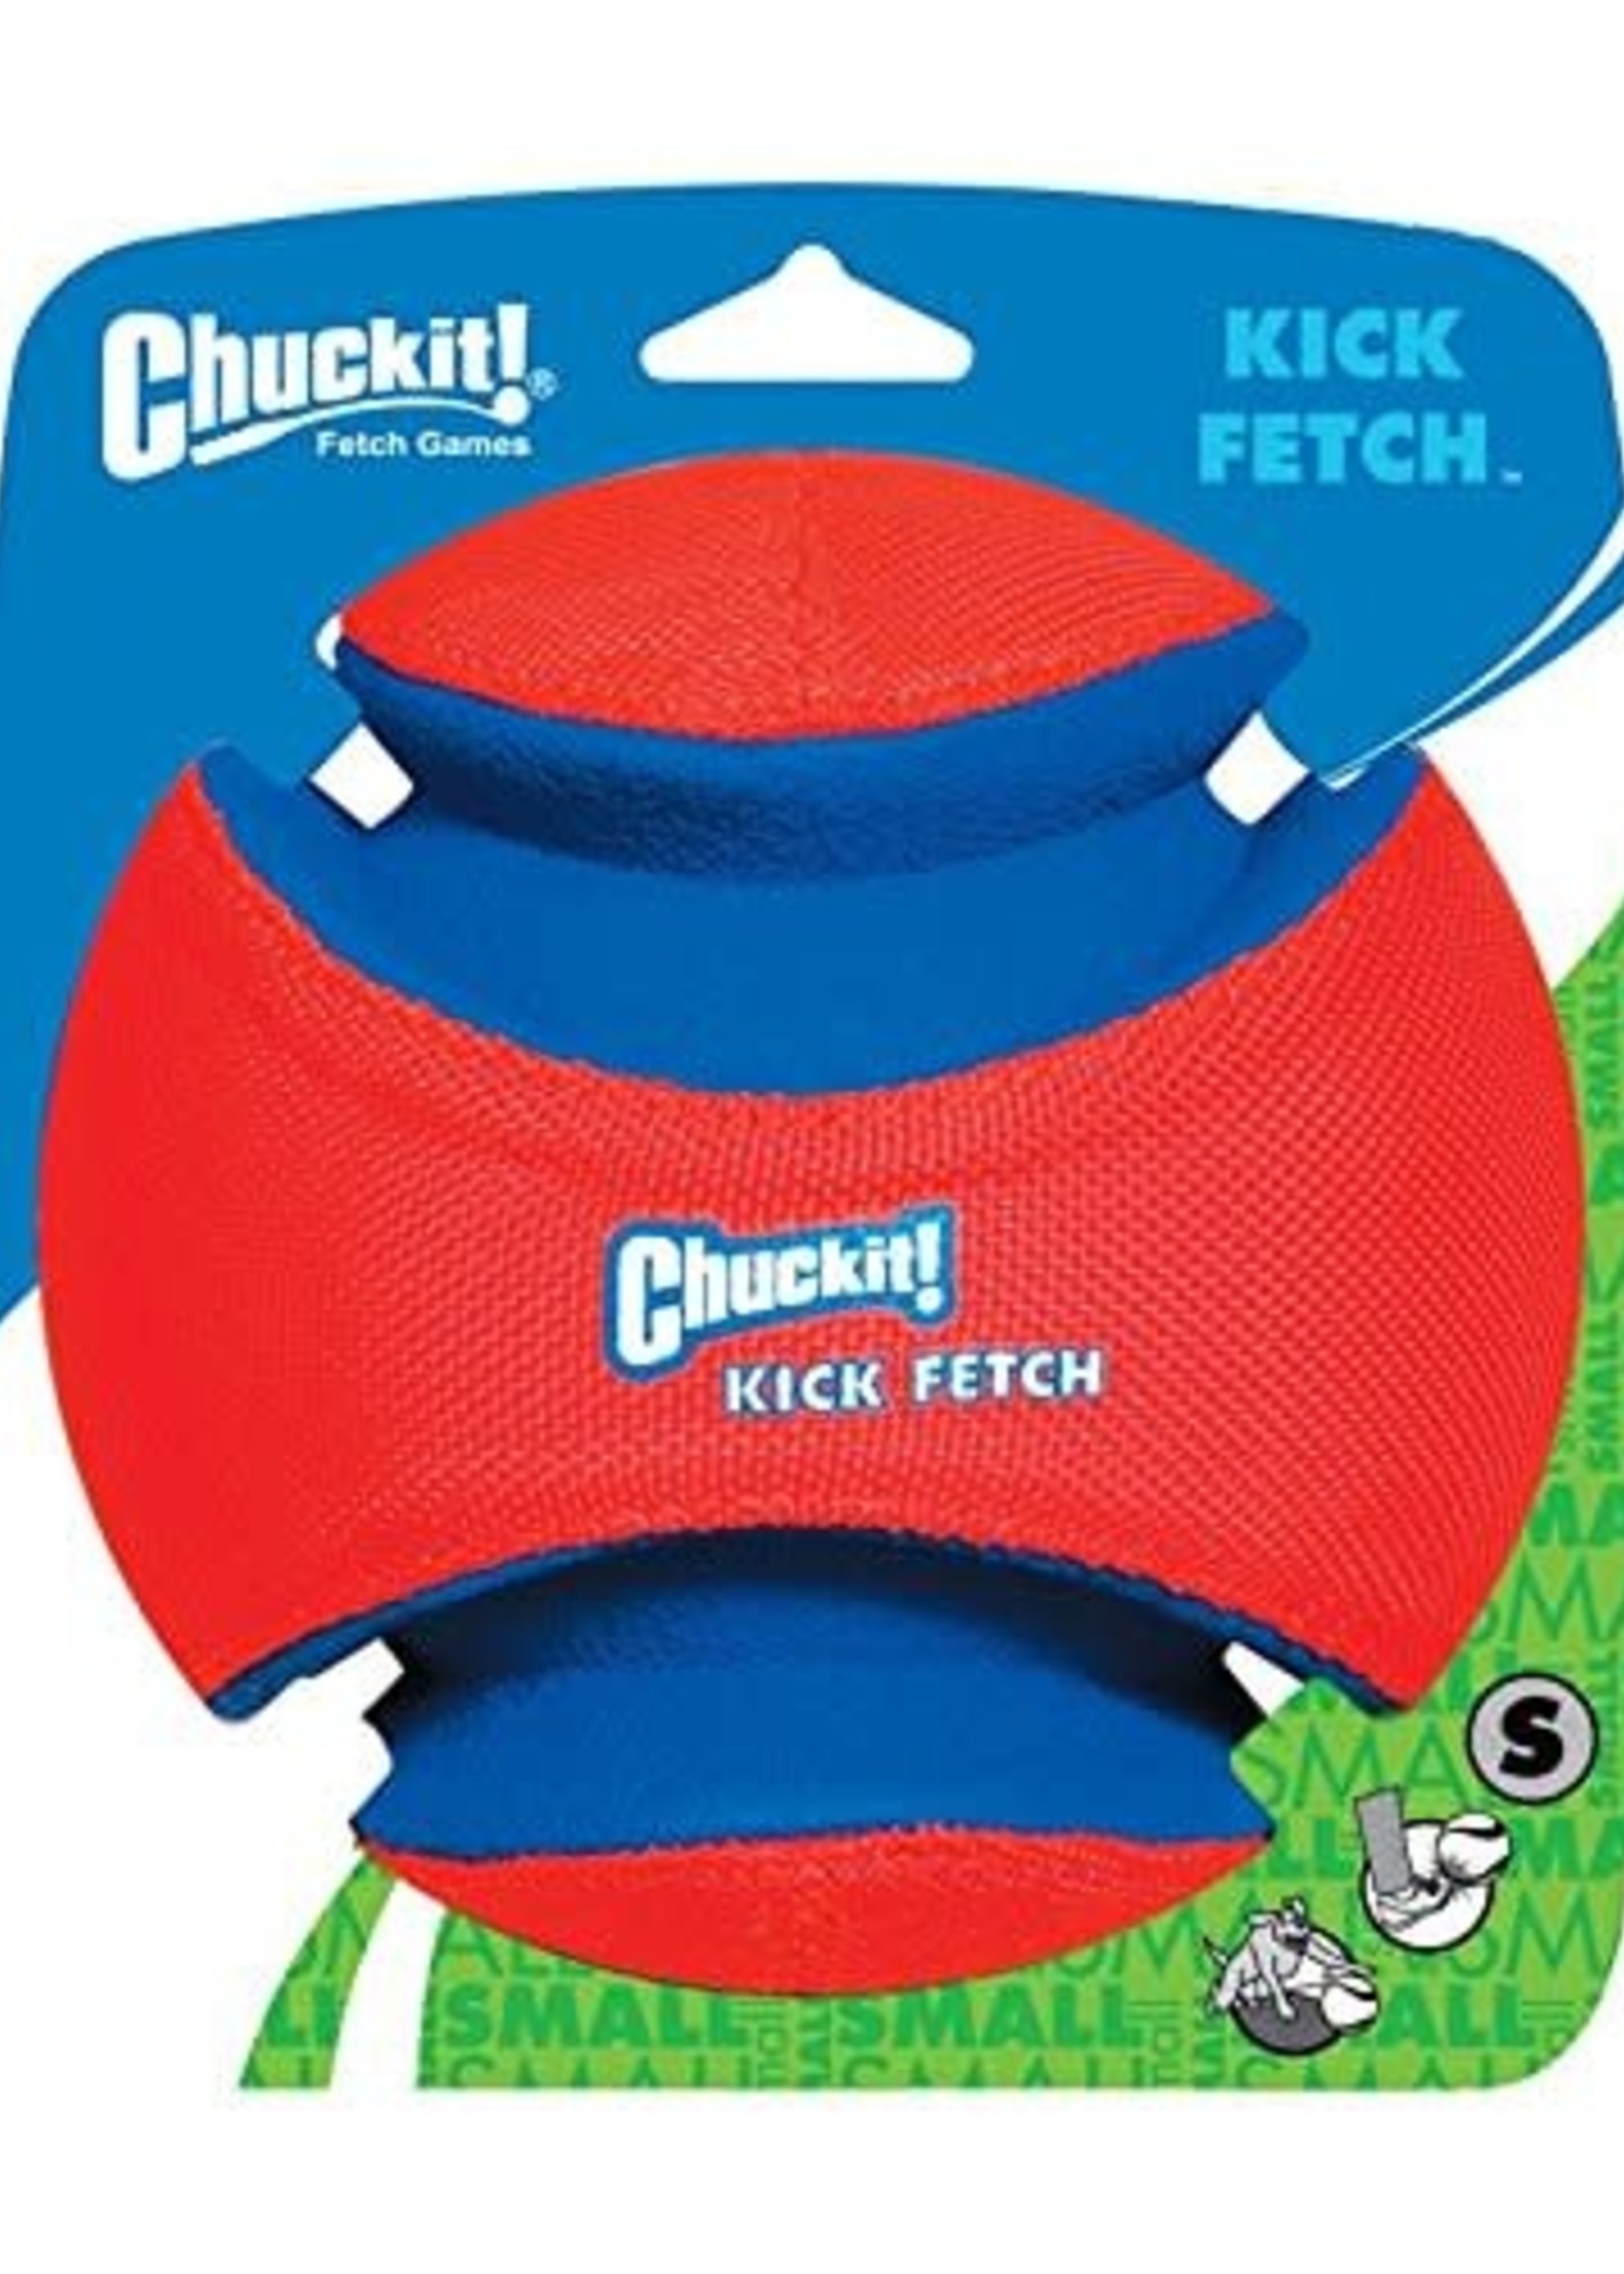 Chuck It! ChuckIt! - Kick Fetch Ball  Small